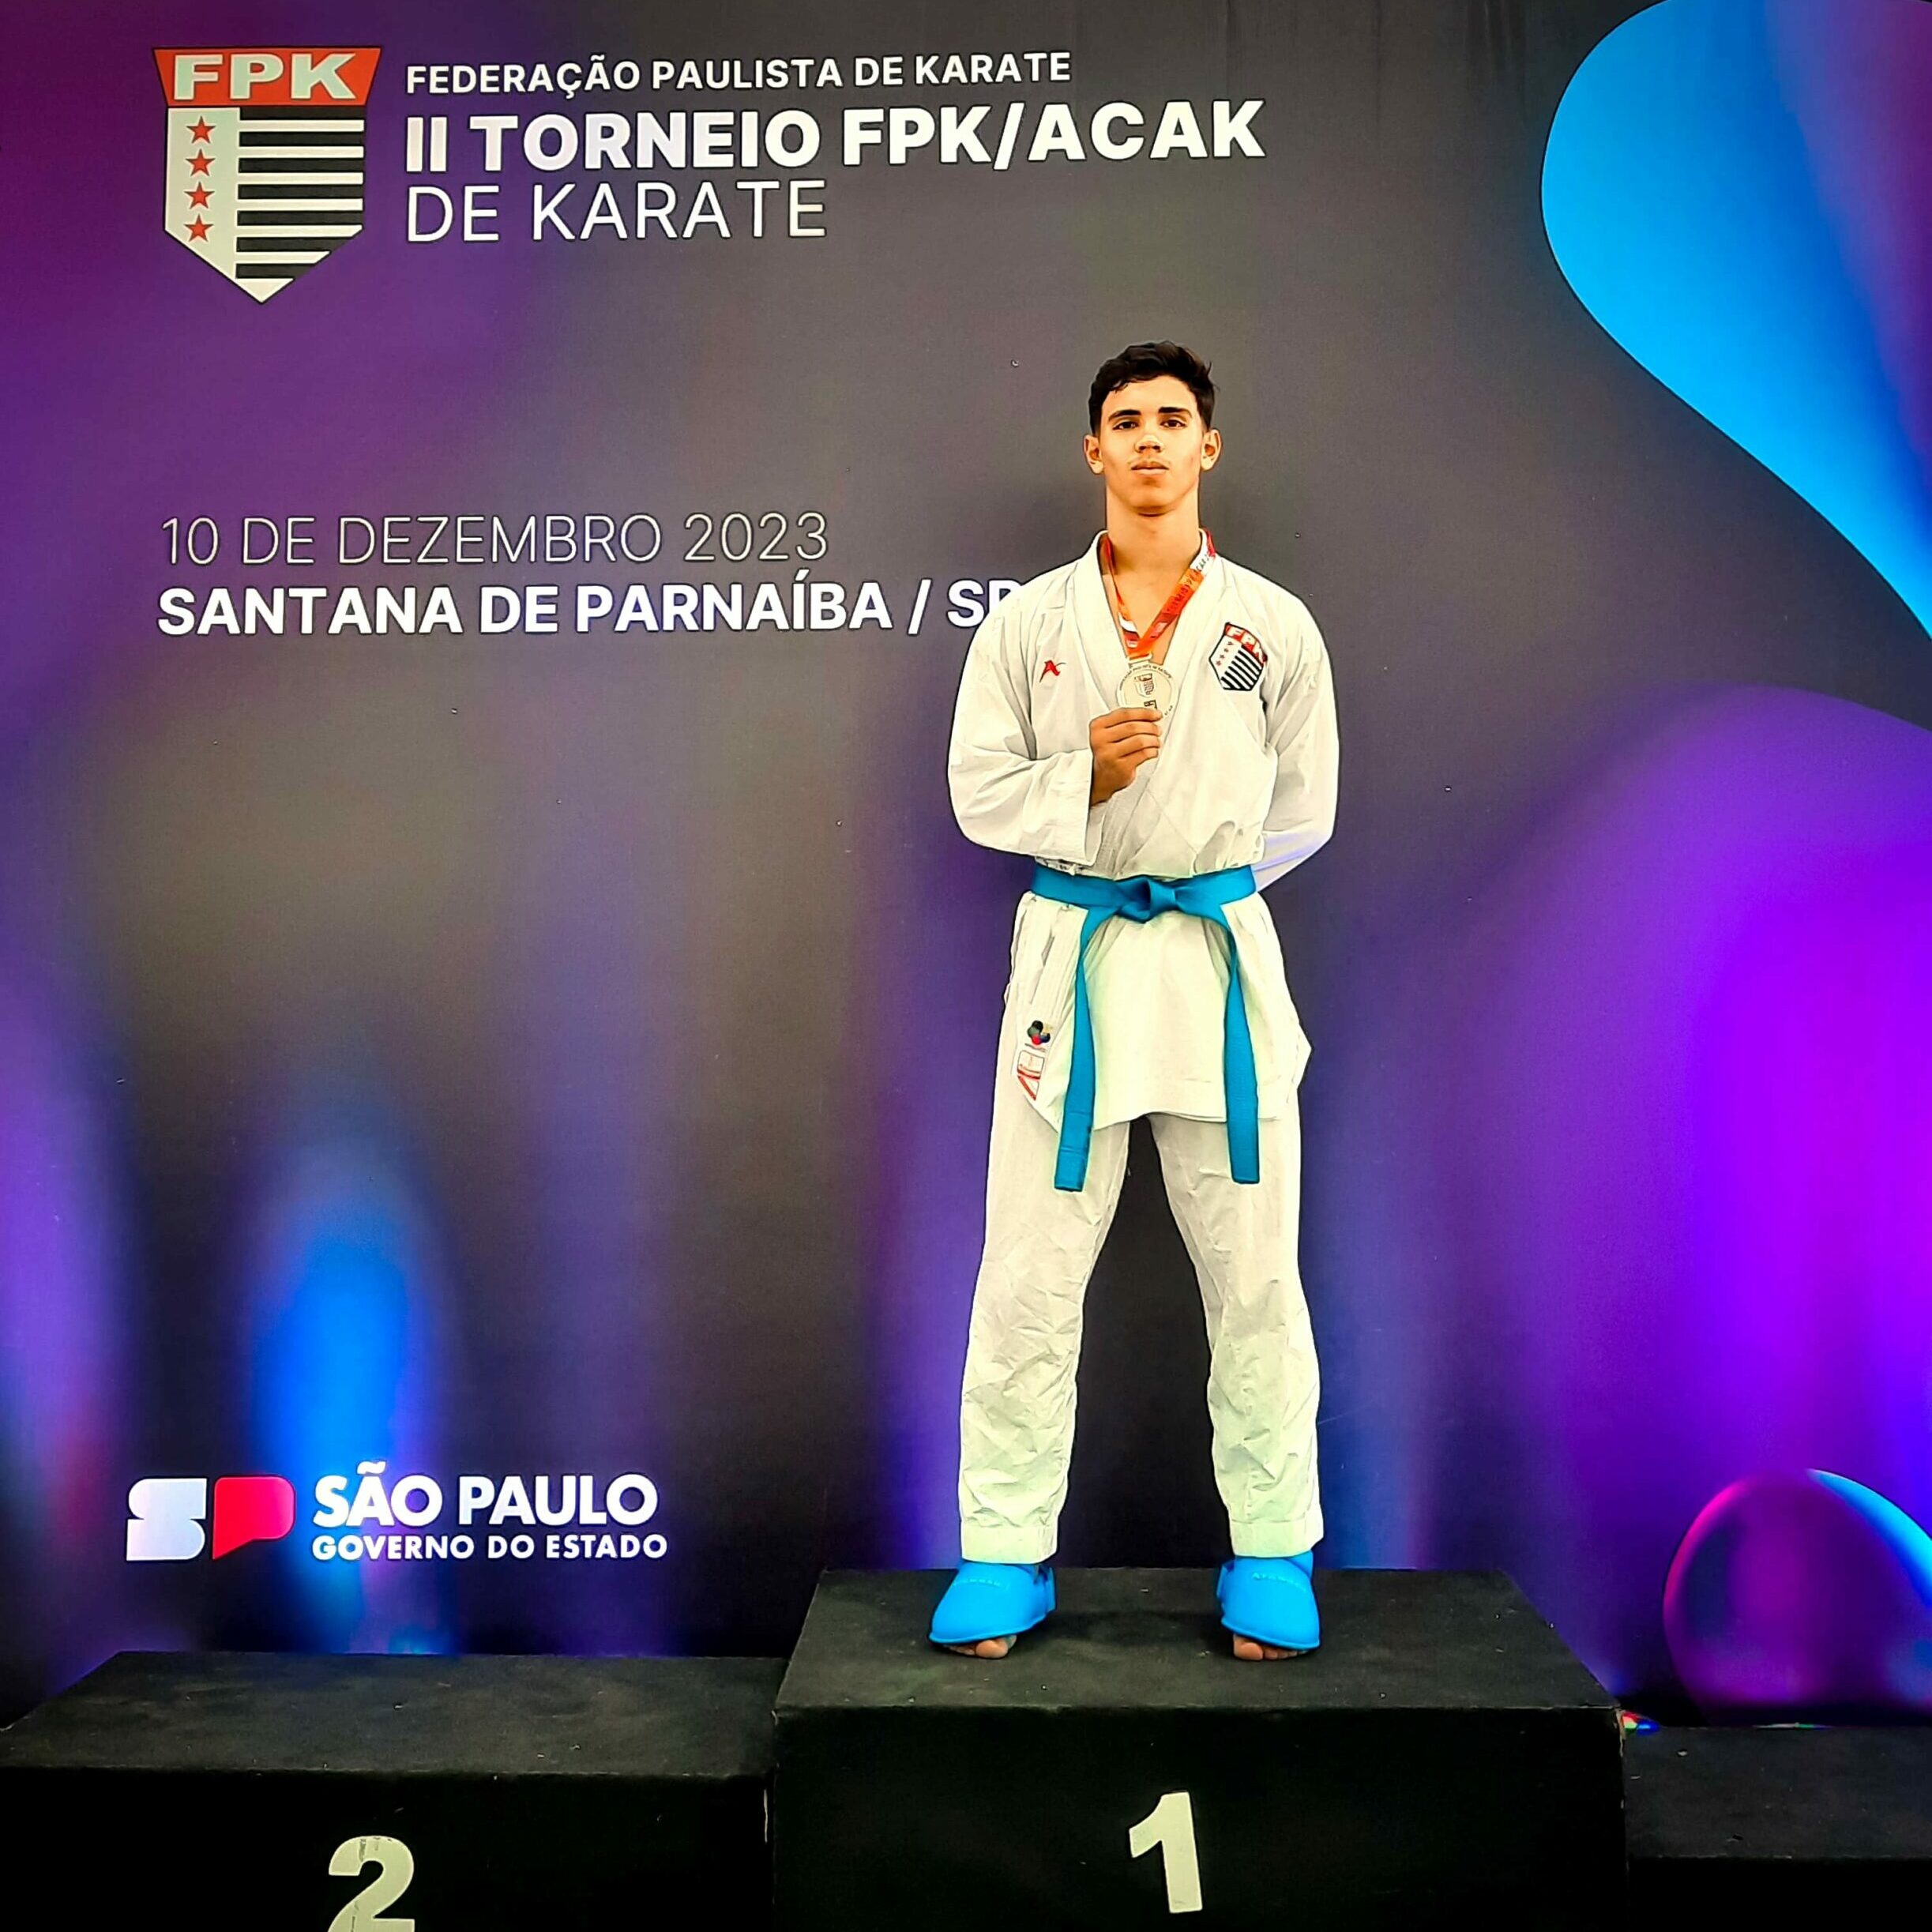 Cauã Souza, de 16 anos, sagrou-se campeão na categoria -76 kg júnior